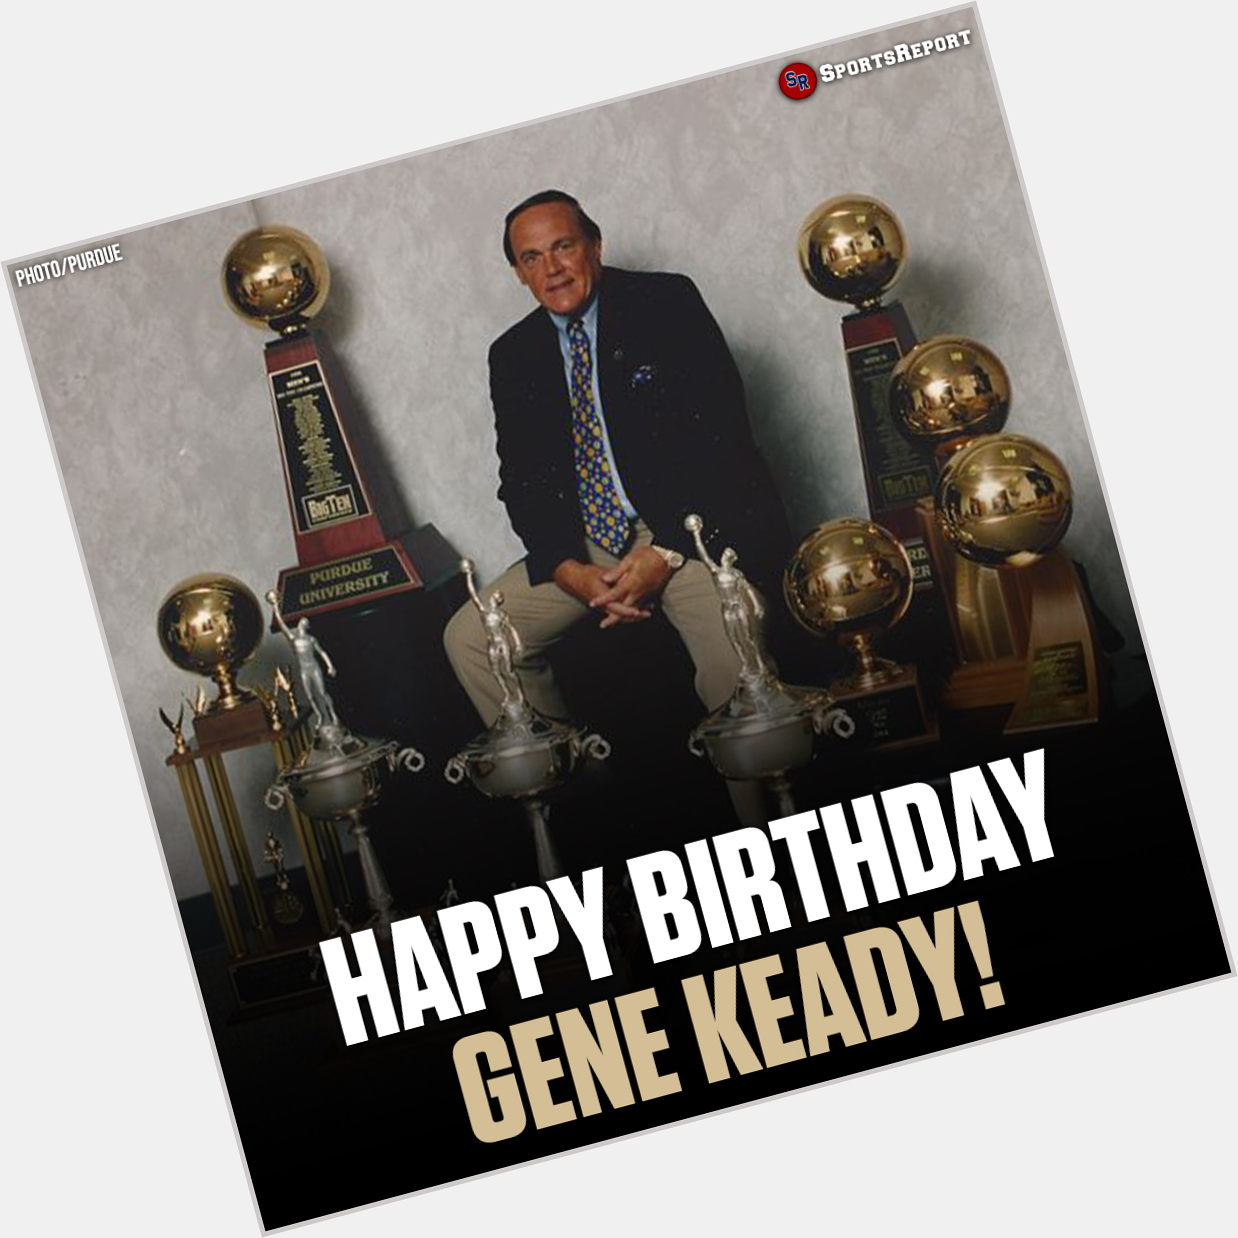  Fans, let\s wish Coaching LEGEND Gene Keady a Happy Birthday!! 